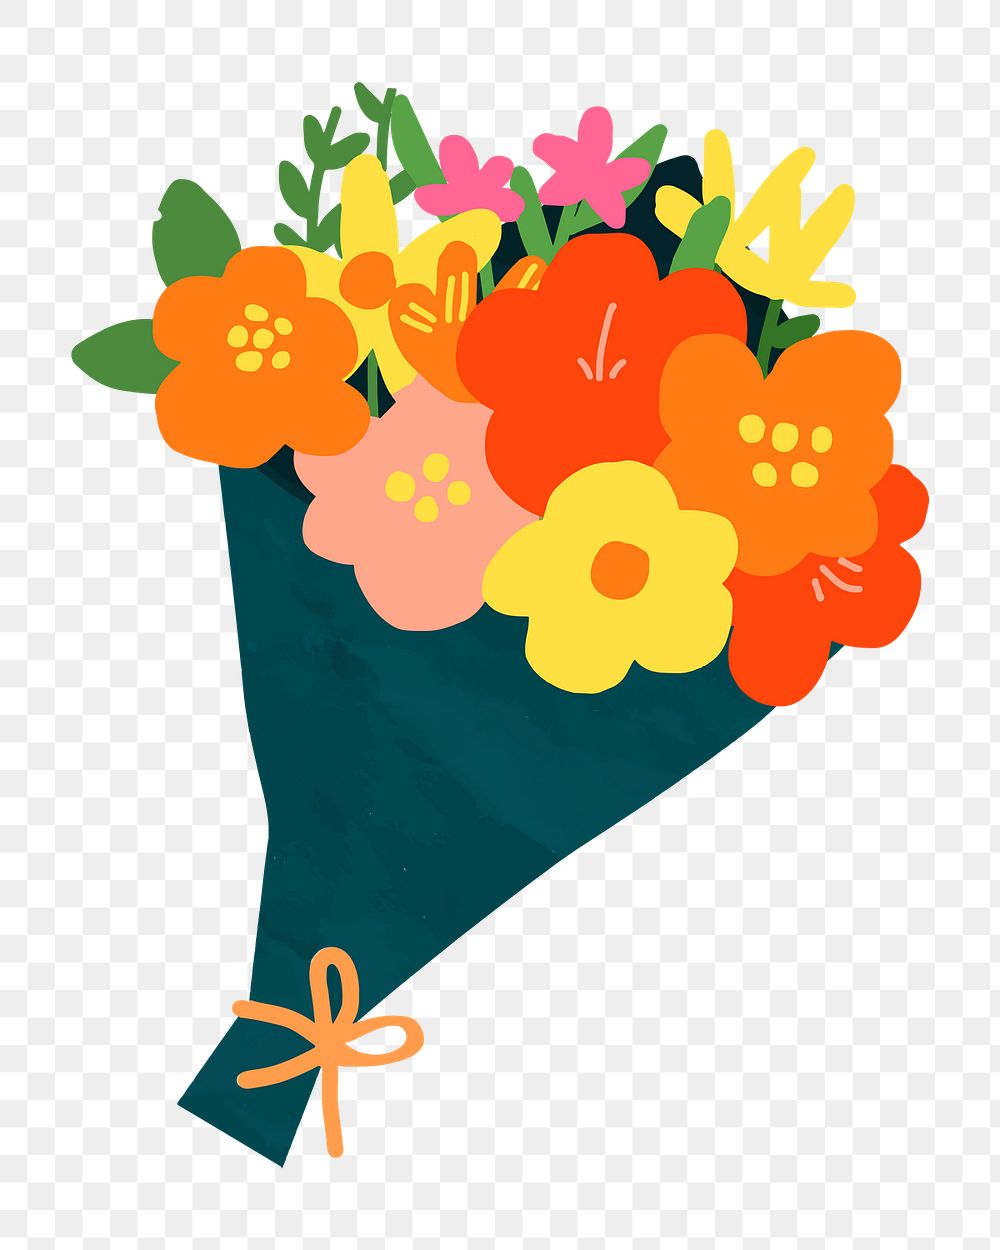 Flower bouquet png sticker, botanical illustration on transparent background 